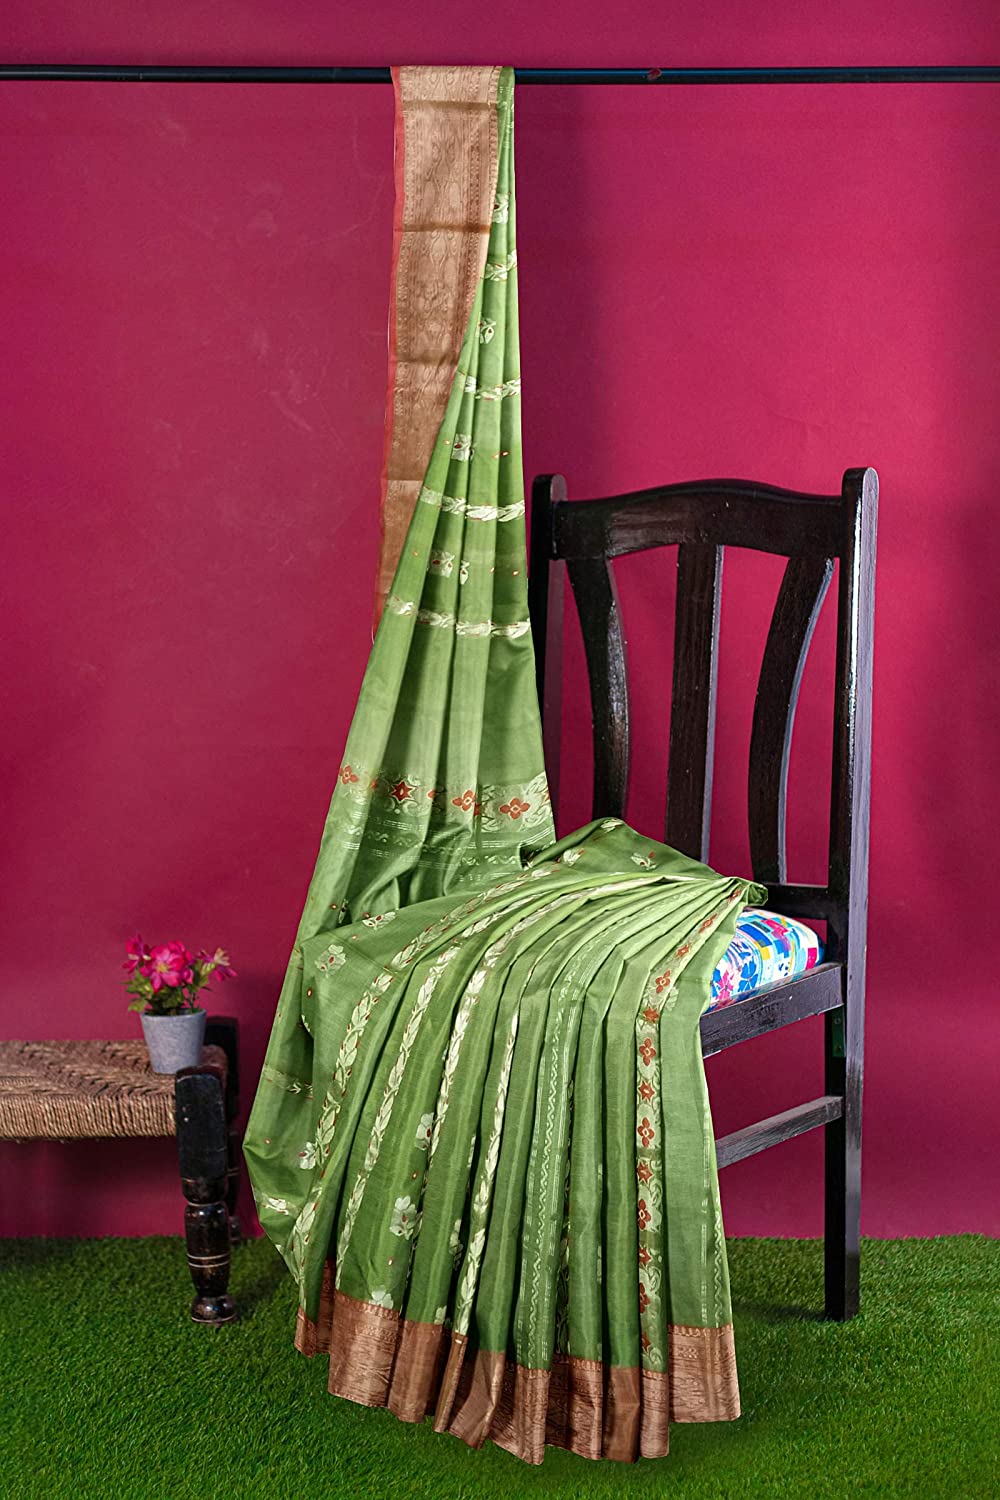 Pradip Fabrics Green color Tant cotton Silk Blend Saree